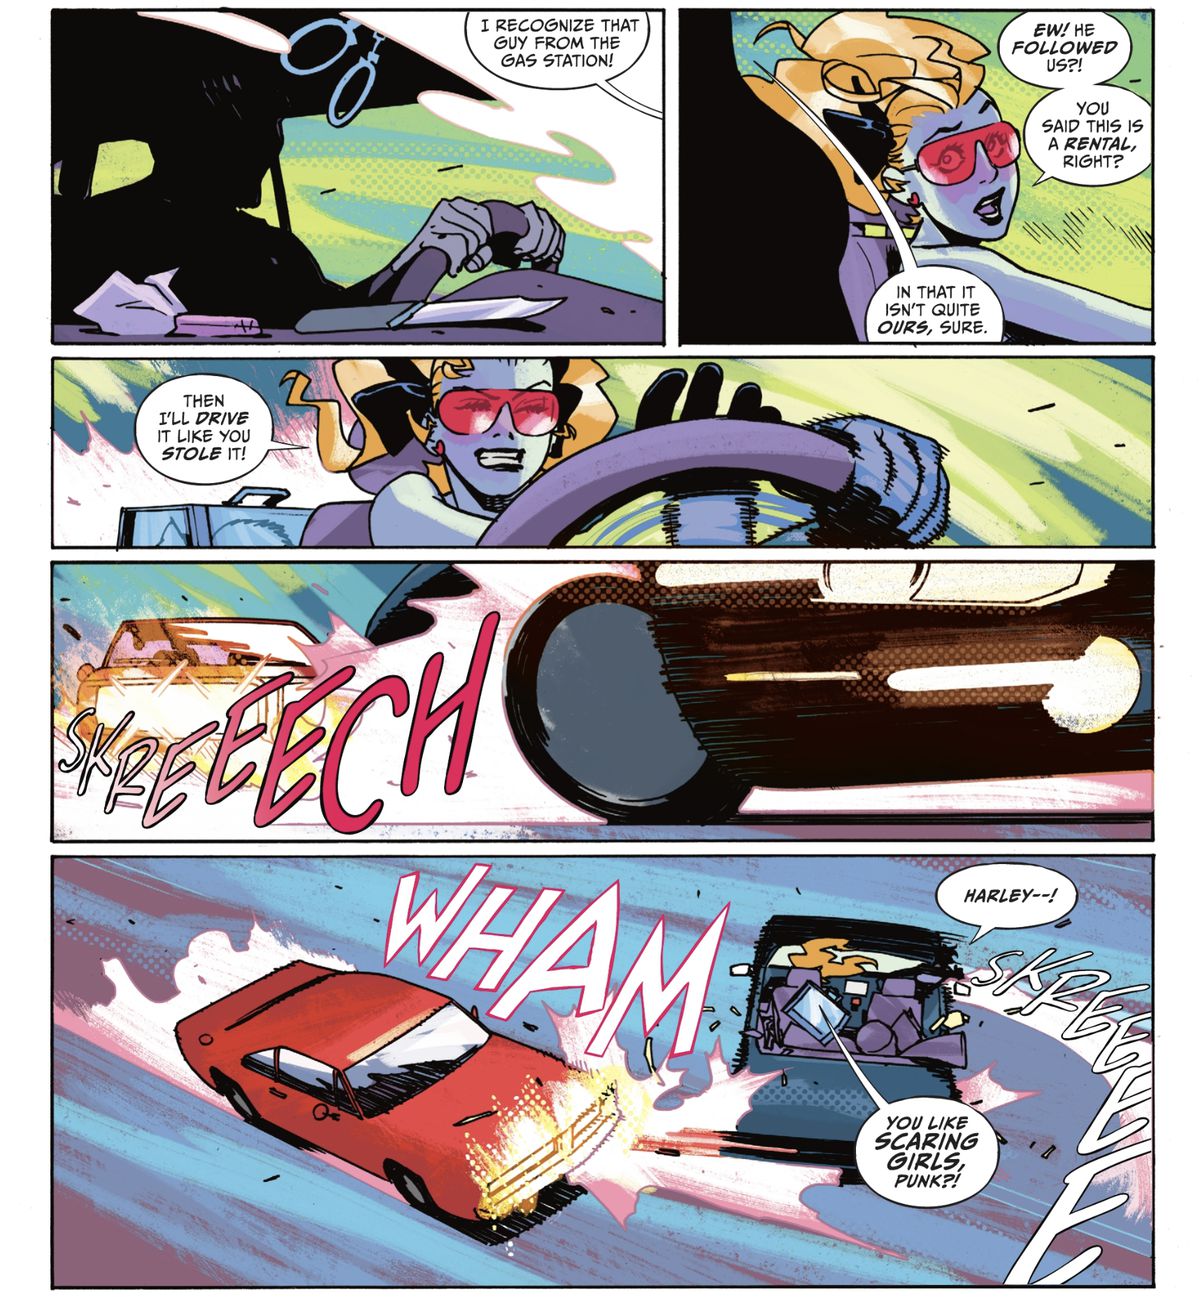 Dopo aver realizzato che l'uomo dietro di loro ha speronato la parte posteriore della loro auto, Harley Quinn tira il volante e fa girare il veicolo in modo controllato per schiantarlo all'indietro, urlando 